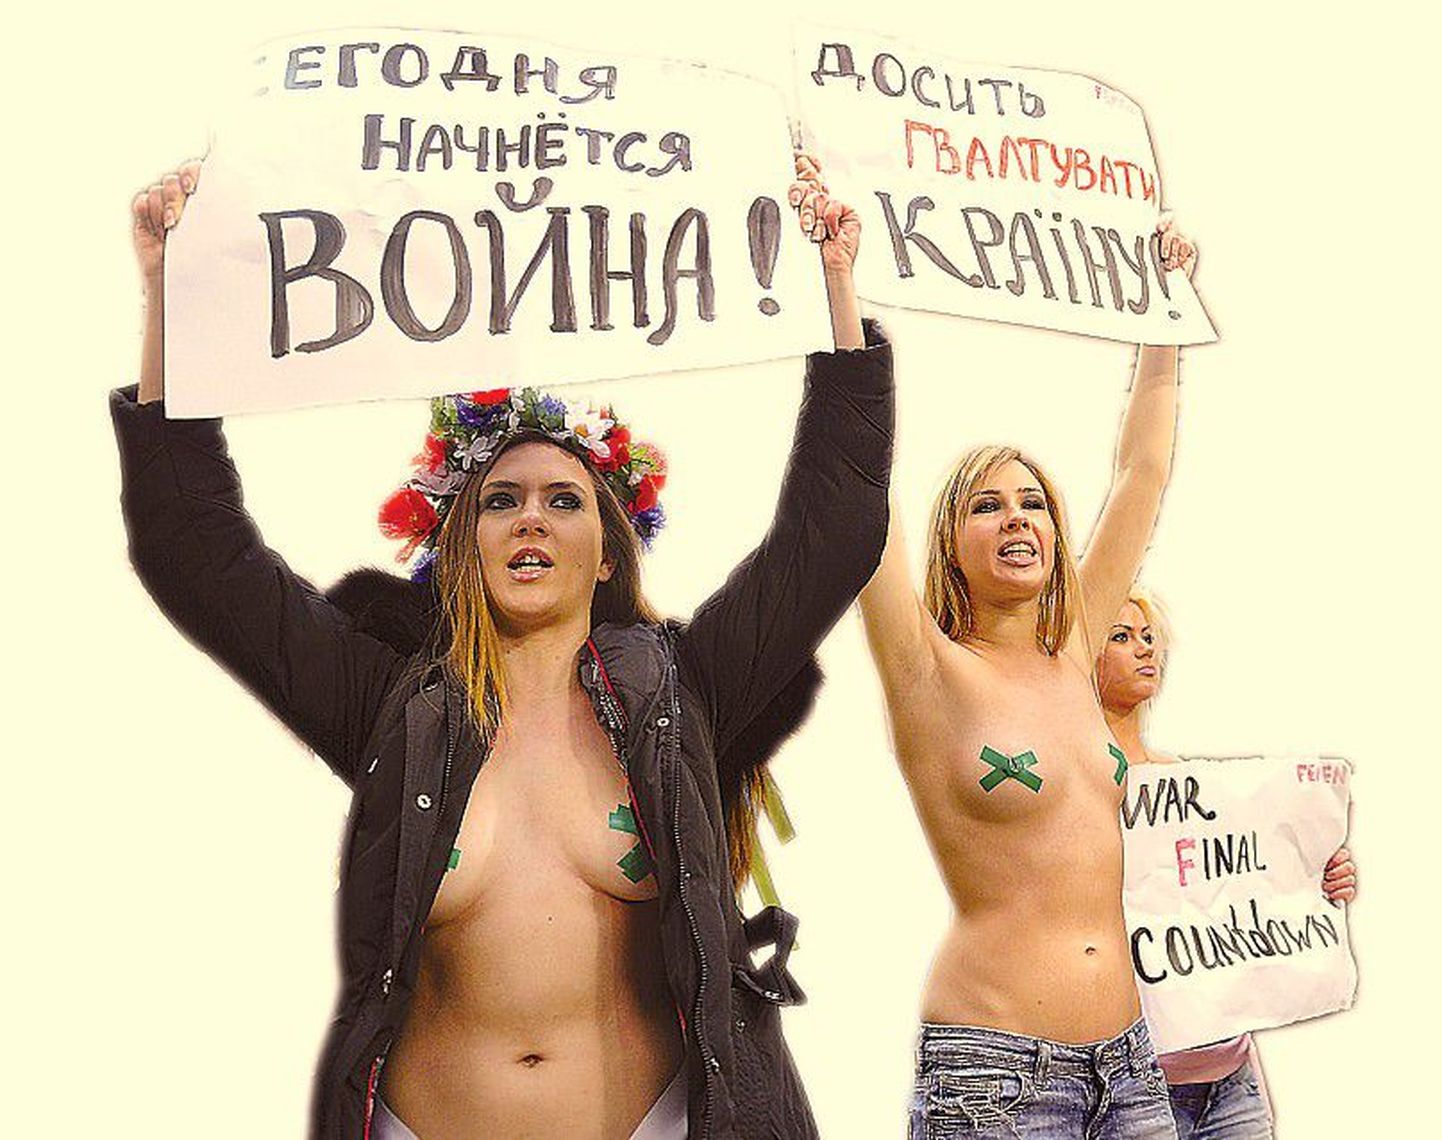 В борьбе за правое дело любые методы хороши — юные красавицы разделись до пояса на избирательном участке в Киеве в знак протеста против нарушения демократии. Обнаженных девушек, входящих в общественную организацию
Femen, задержали милиционеры и выпроводили из участка.